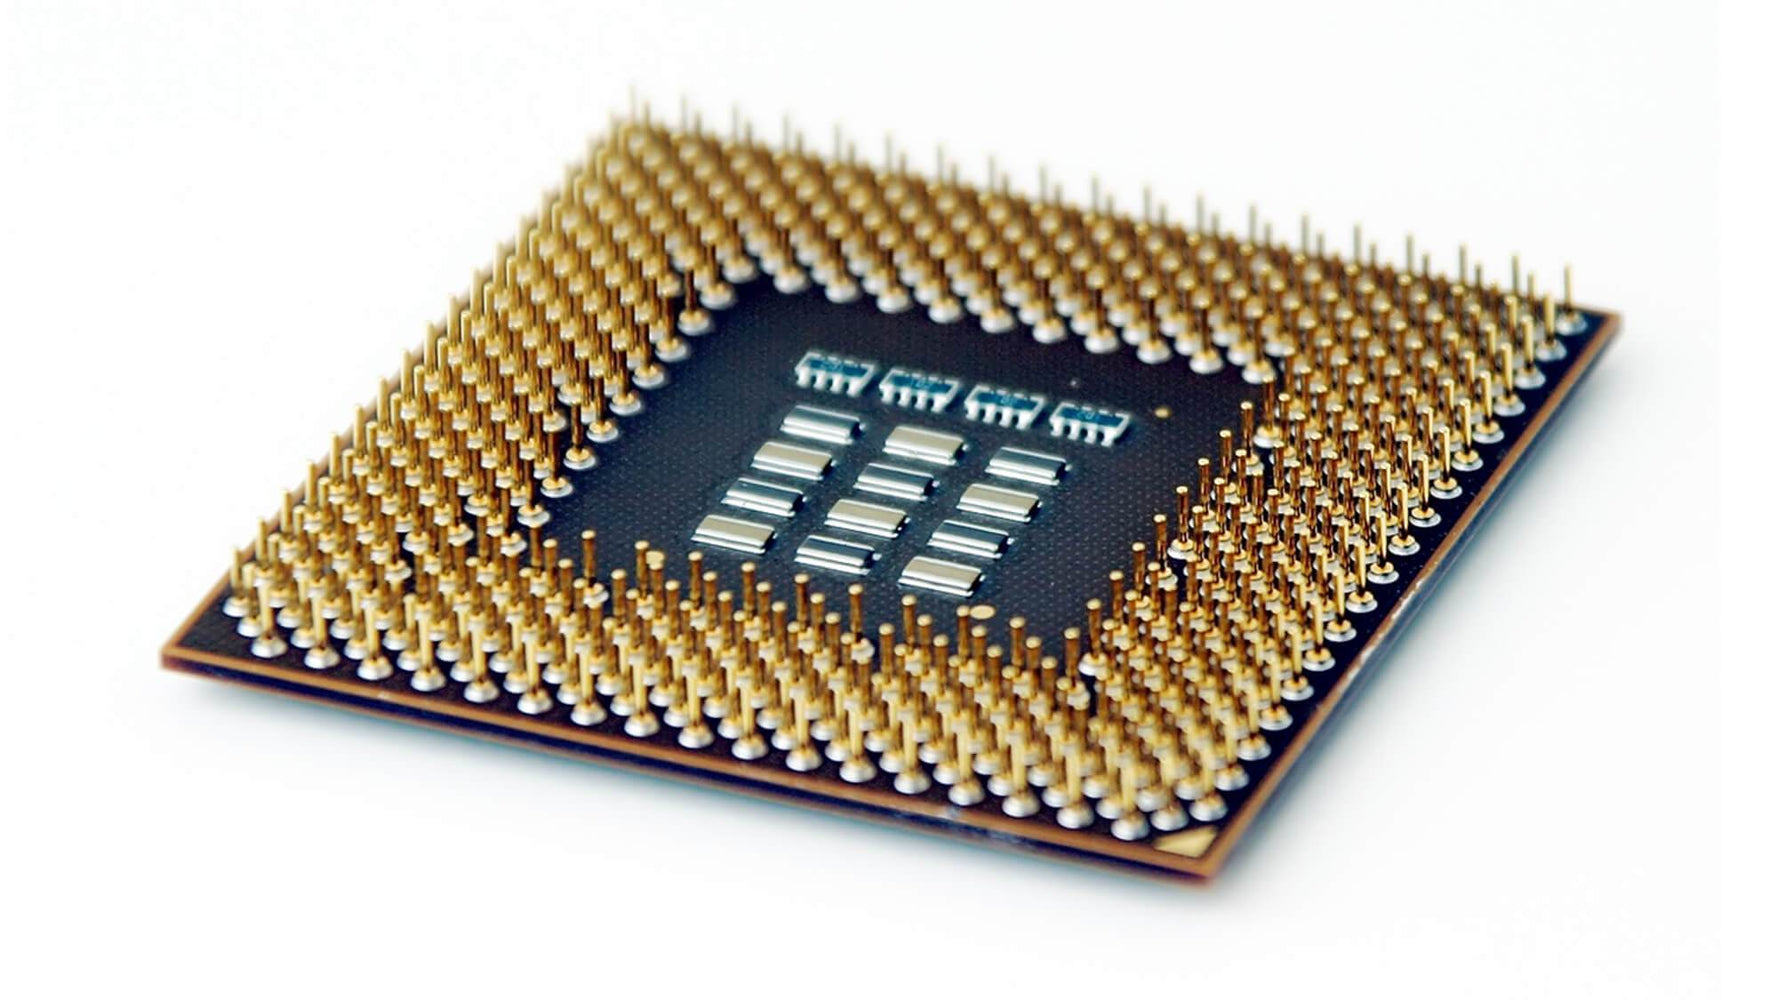 BX80615E74870 - Intel Xeon 10 Core E7-4870 2.4GHz 30MB SMART Cache 6.4GT/s QPI Socket LGA-1567 32NM 130W Processor